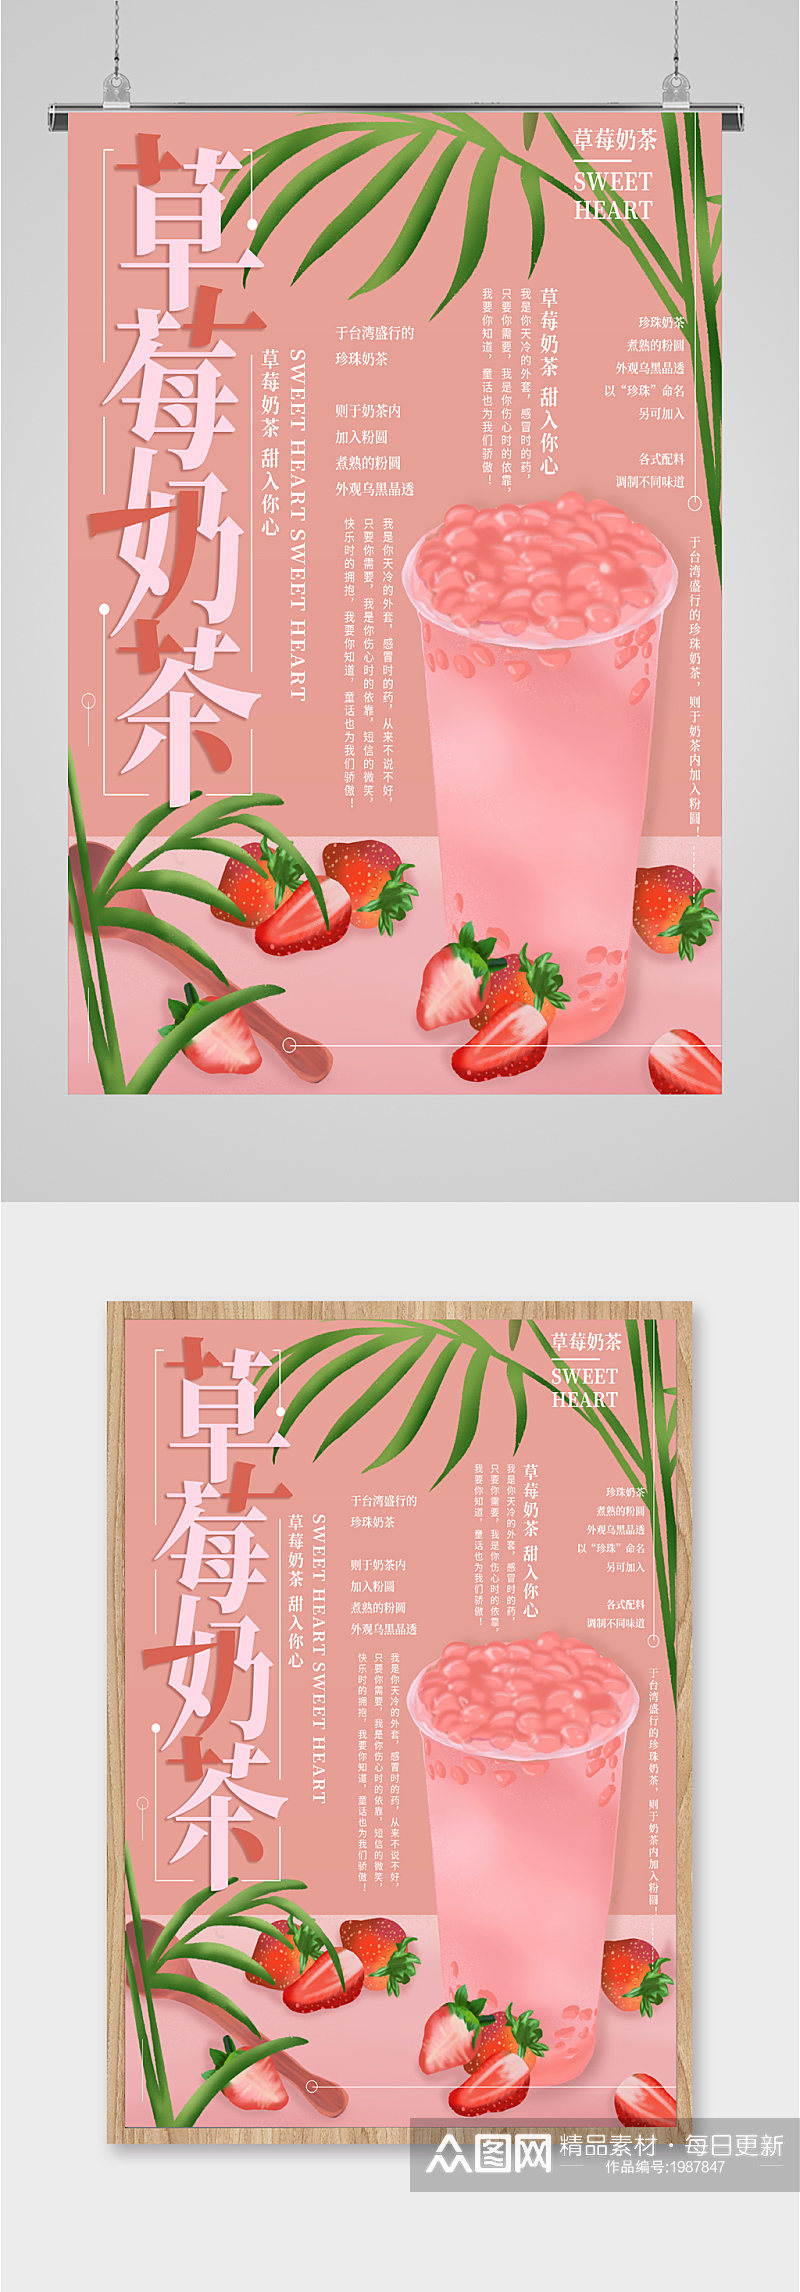 草莓奶茶饮品海报素材